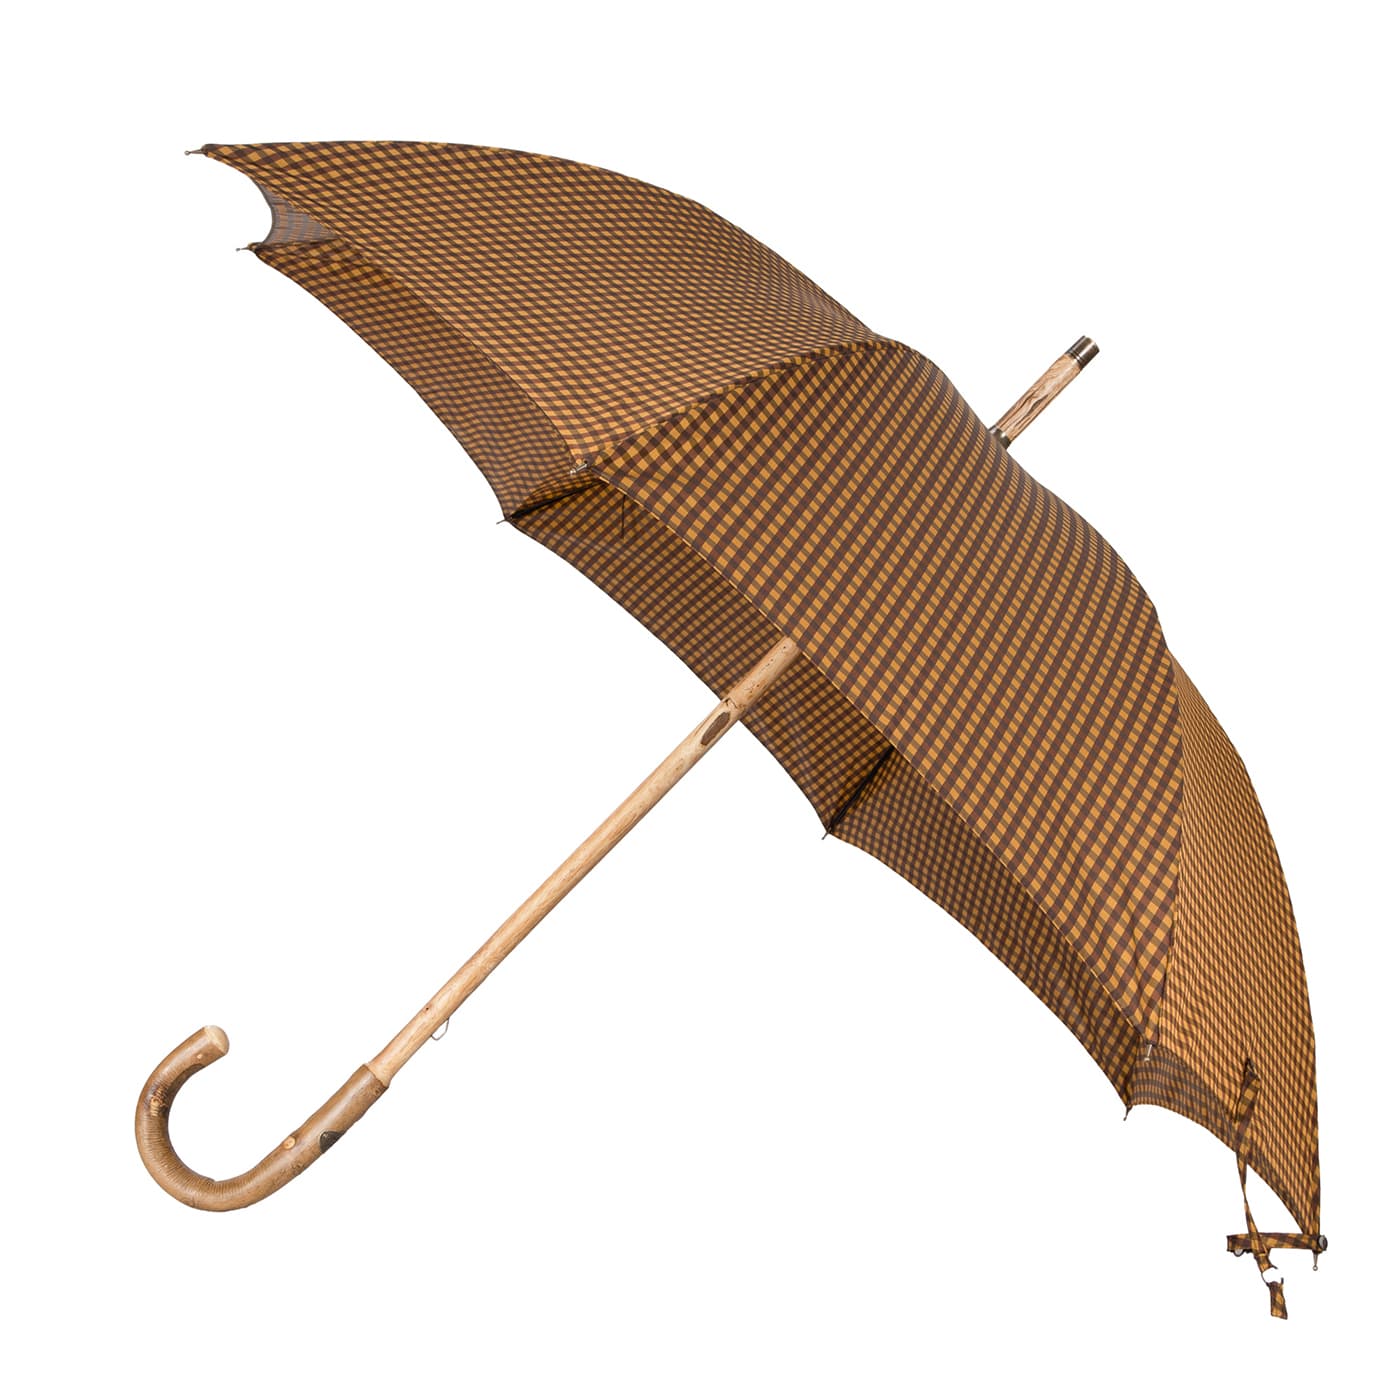 Yellow and Brown Umbrella - Francesco Maglia Milano